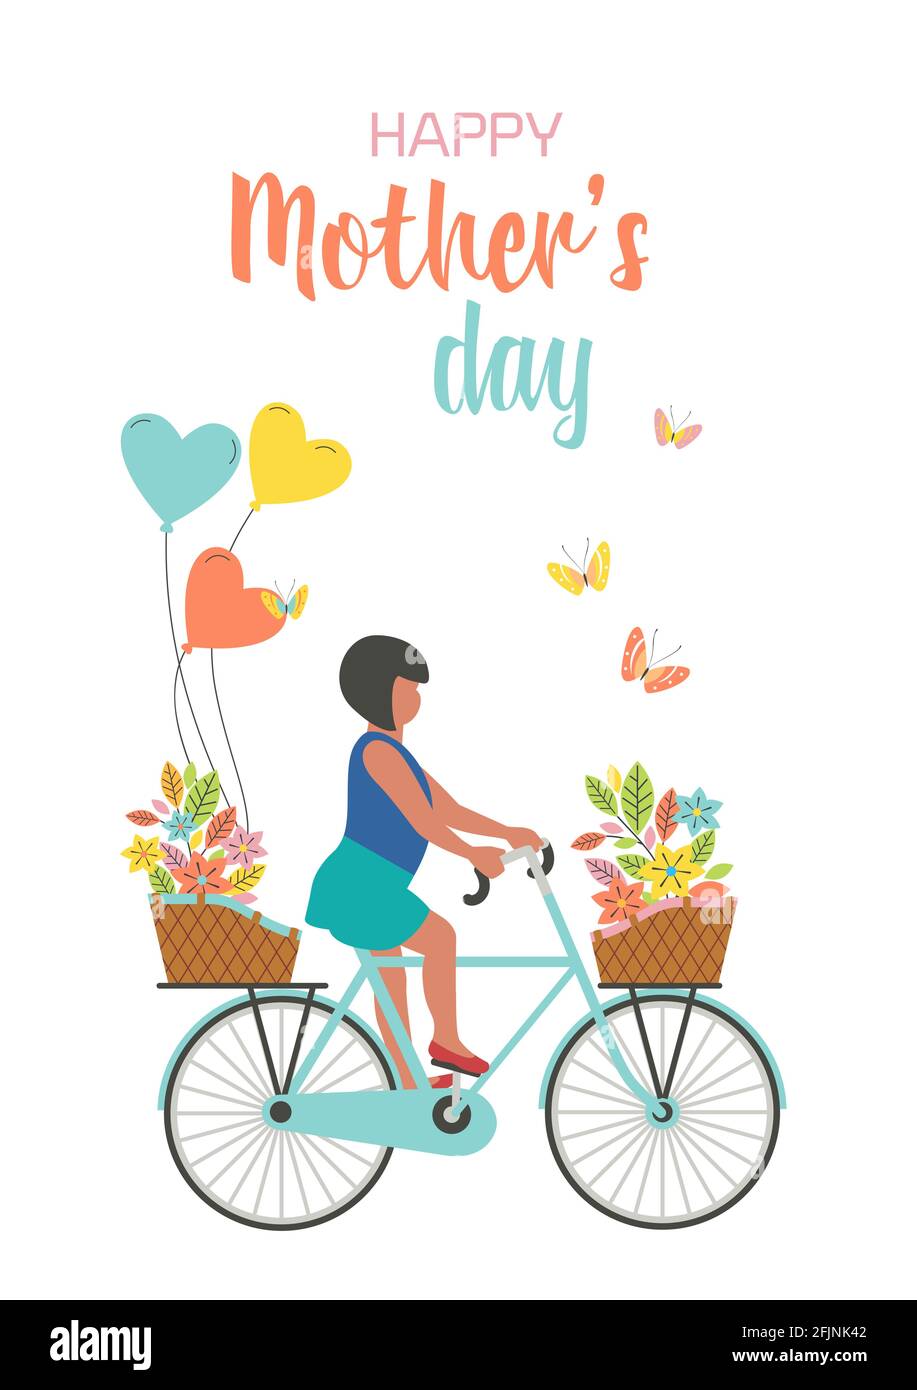 Glückliches Mädchen Fahrrad mit Blumenbouqet reiten, Ballons Geschenke an die Mutter Stock Vektor